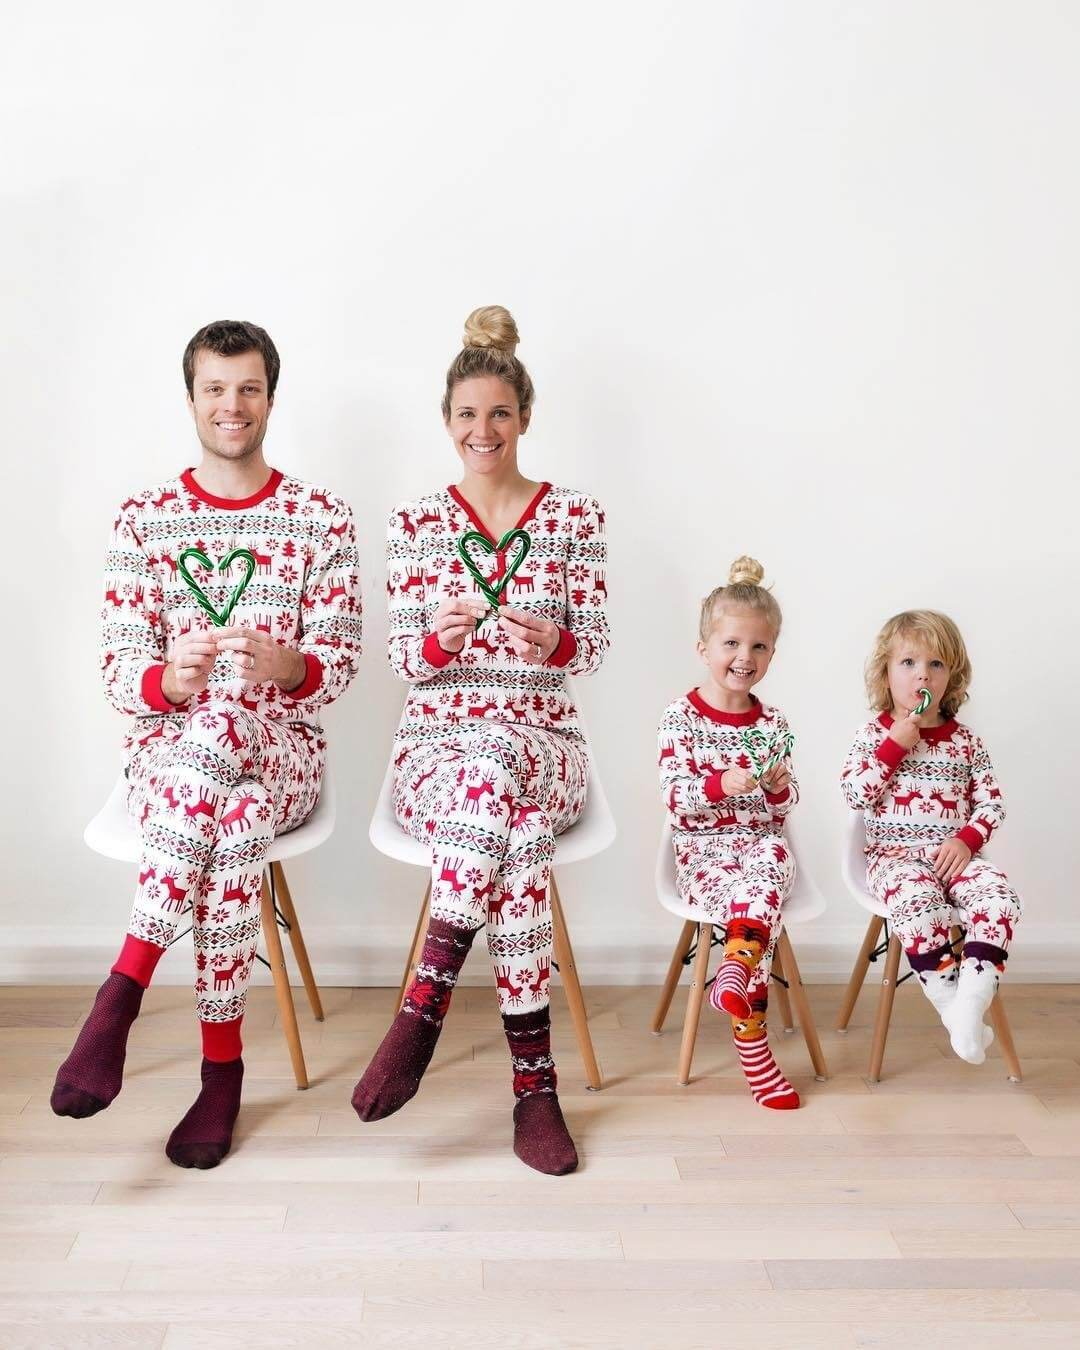 Family Matching Christmas Deer and Snowflake Pajamas Set